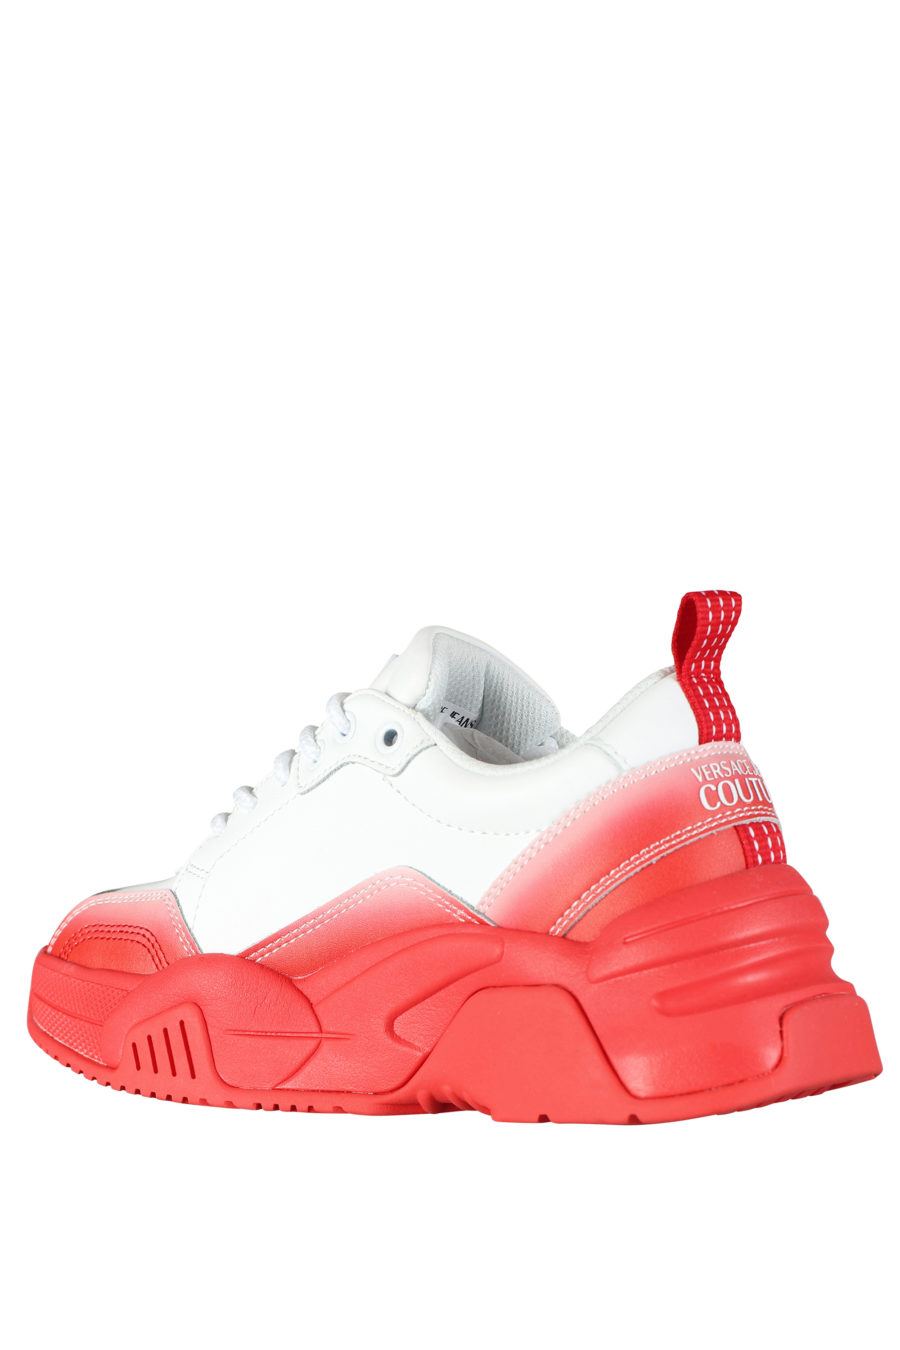 Zapatillas blancas con degrade rojo "stargaze" - IMG 5267